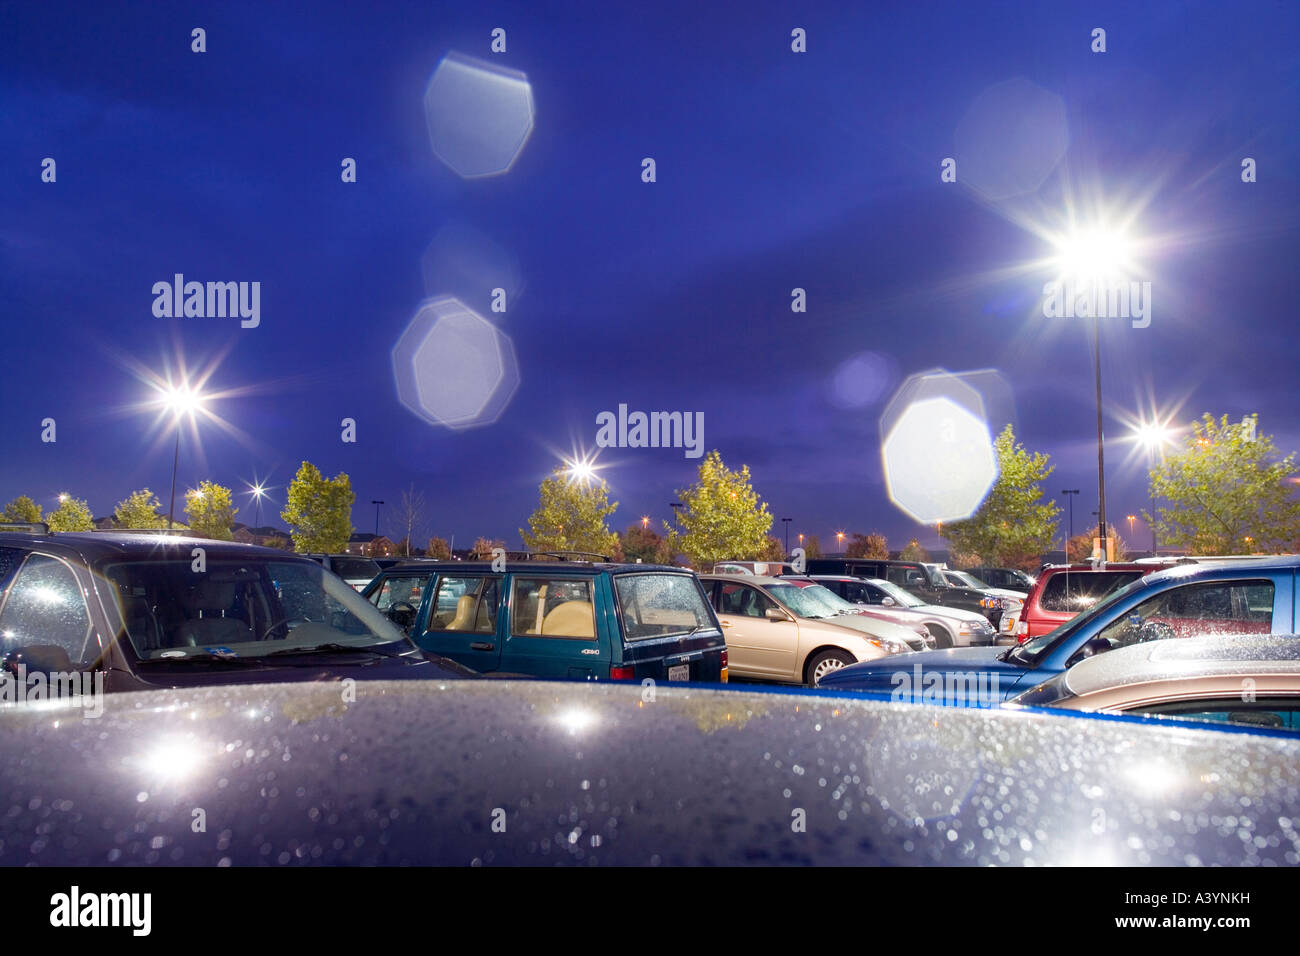 Supermarkt-Parkplatz, Parkplatz in der Regen in der Nacht. Frühherbst. Virginia USA. Linseneffekt verursacht durch Regentropfen auf der Linse. Stockfoto